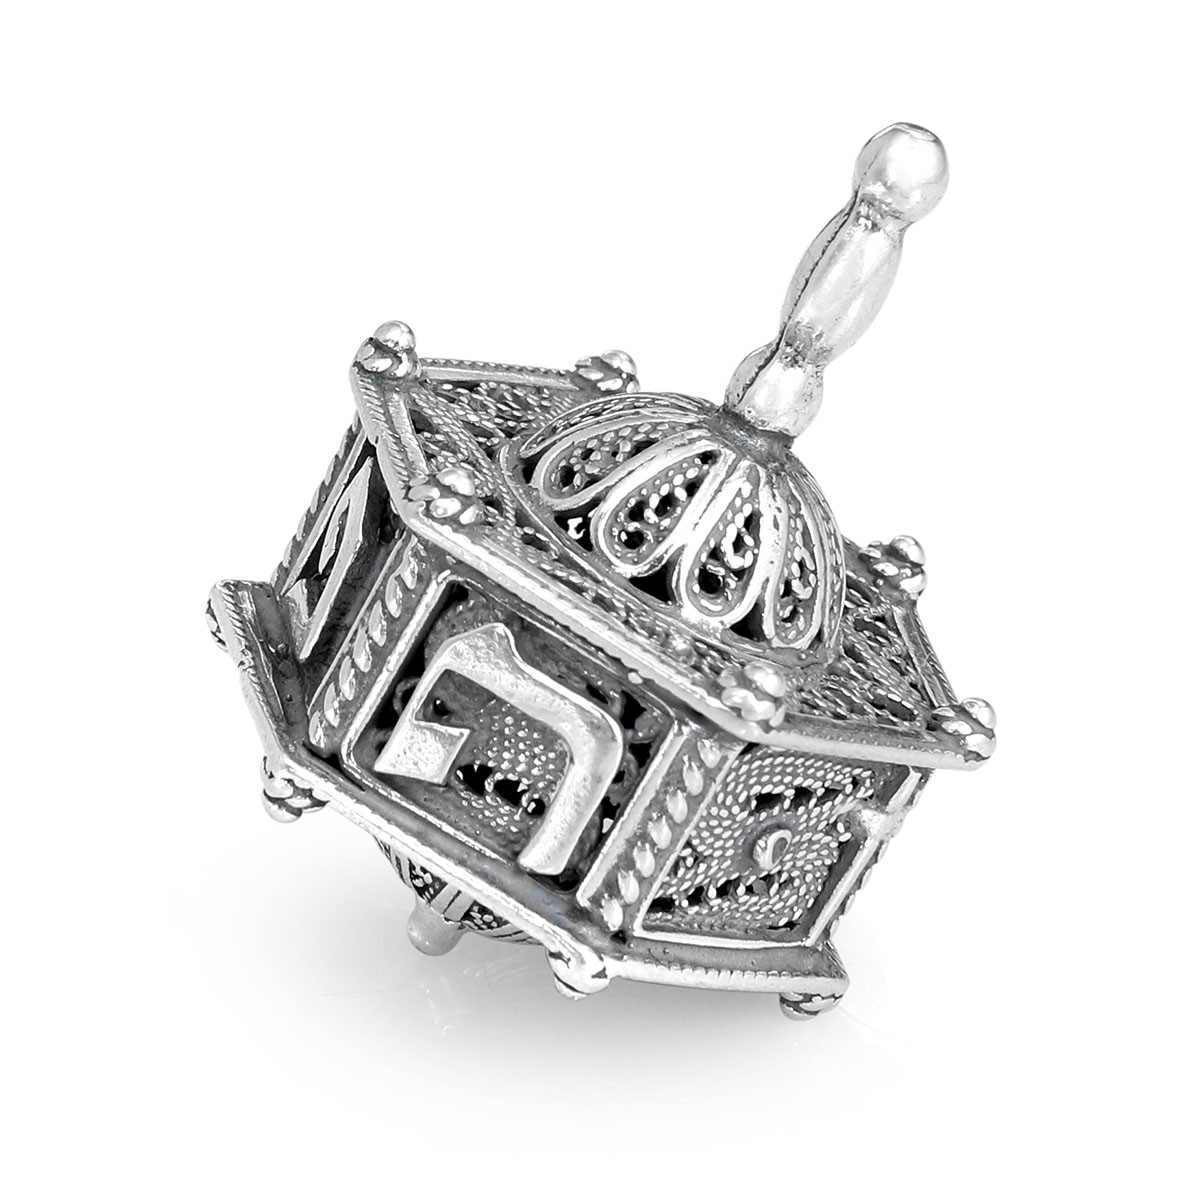 Shoham Yemenite Art Handcrafted Sterling Silver Filigreed Dreidel With Carousel Design - 1